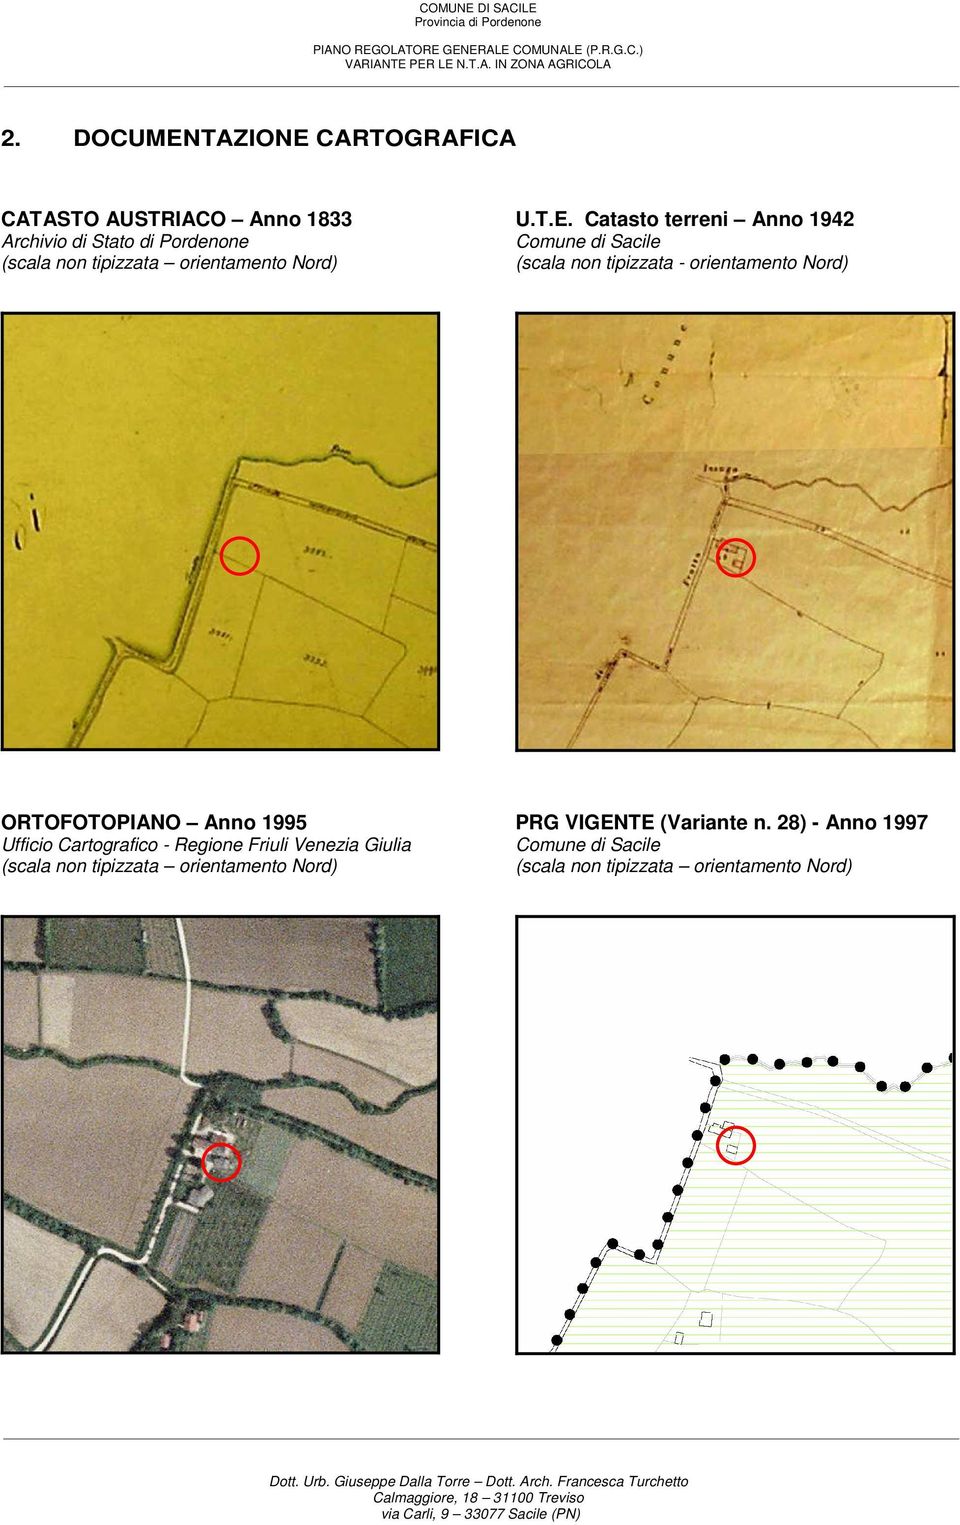 Catasto terreni Anno 1942 Comune di Sacile (scala non tipizzata - orientamento